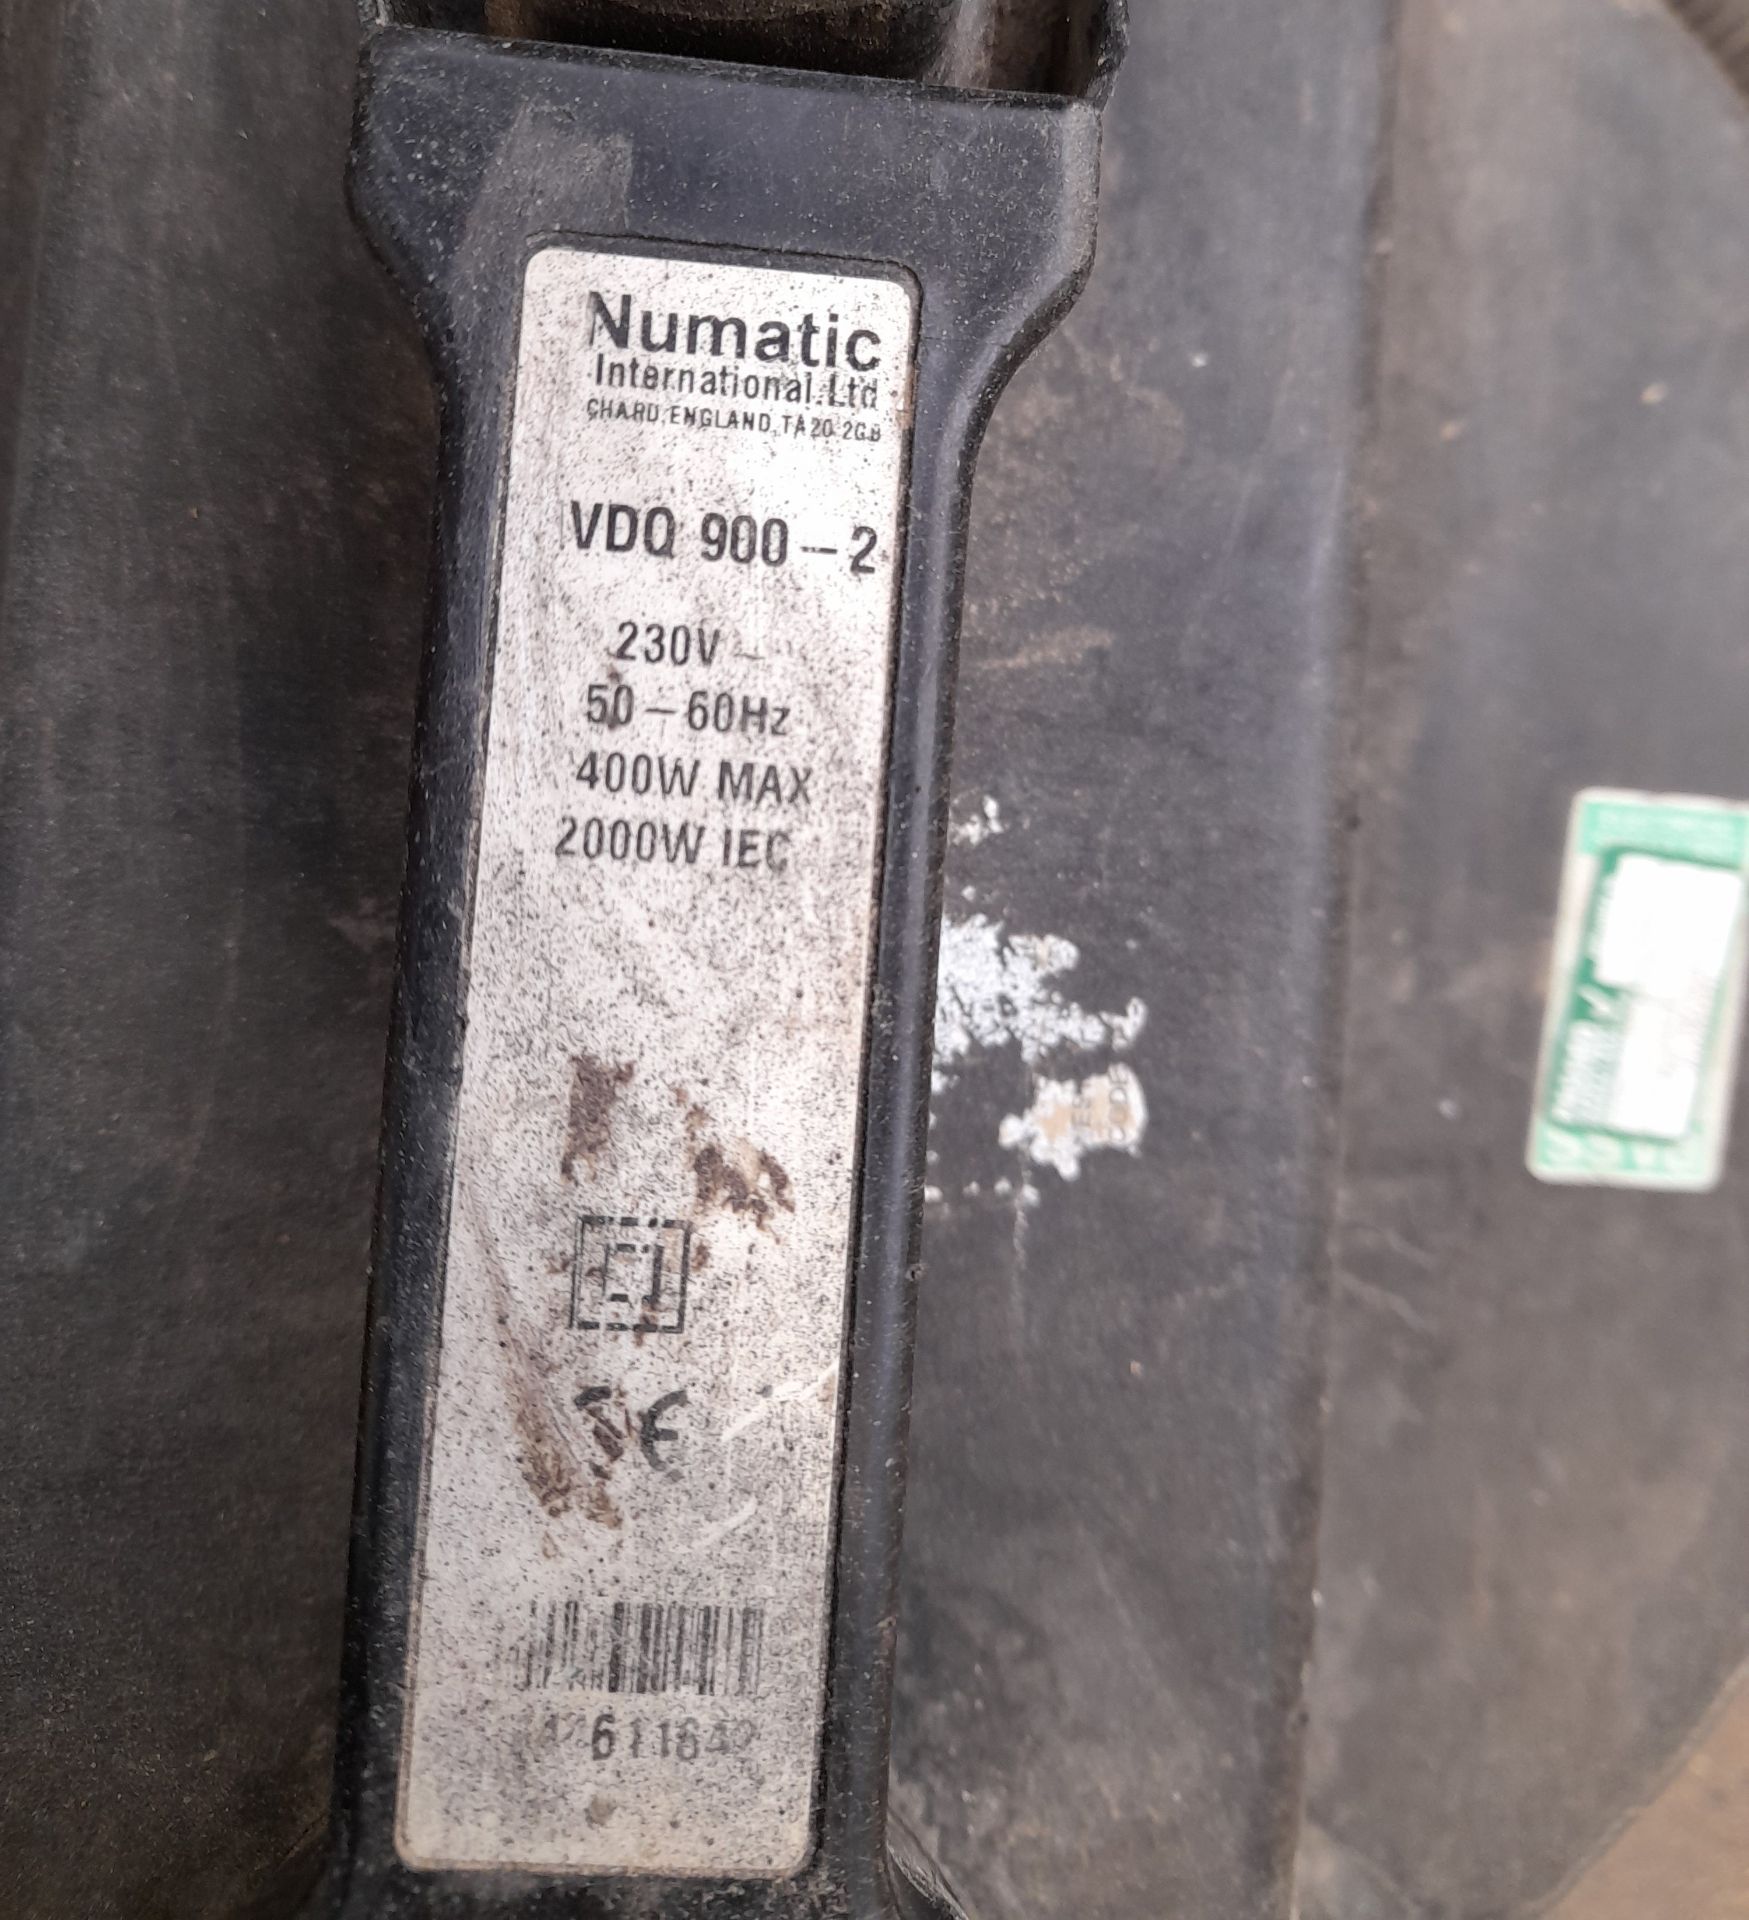 Numatic VDQ900/2 vacuum cleaner - Image 2 of 2